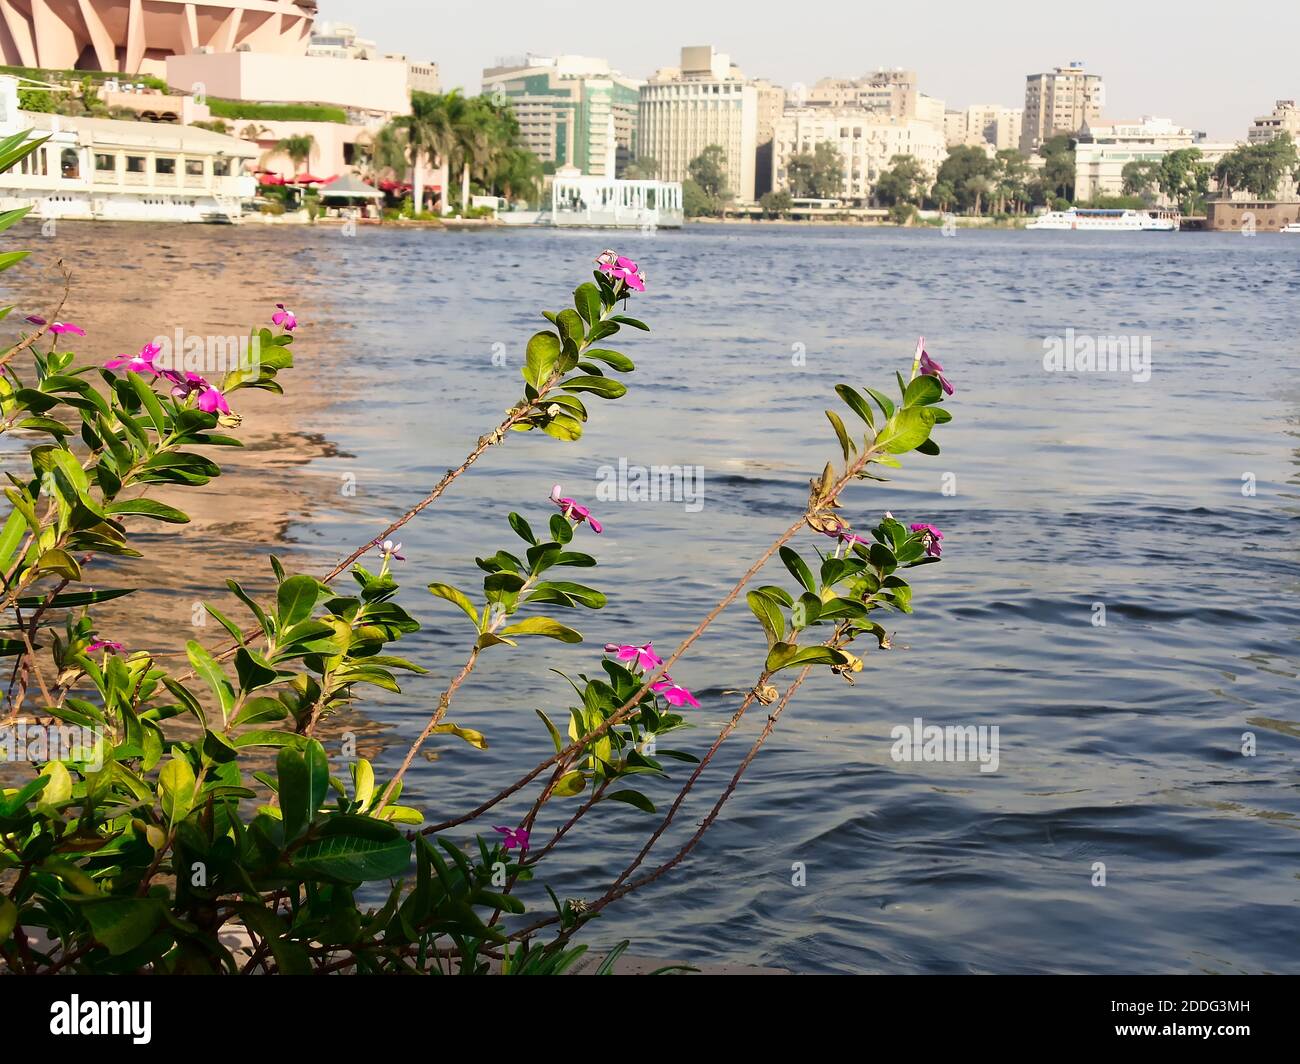 Une photo en gros plan d'une fleur pourpre sur des feuilles vertes avec un fond flou (bokeh) du Nil, un bateau, et des bâtiments sur l'autre rive, Banque D'Images